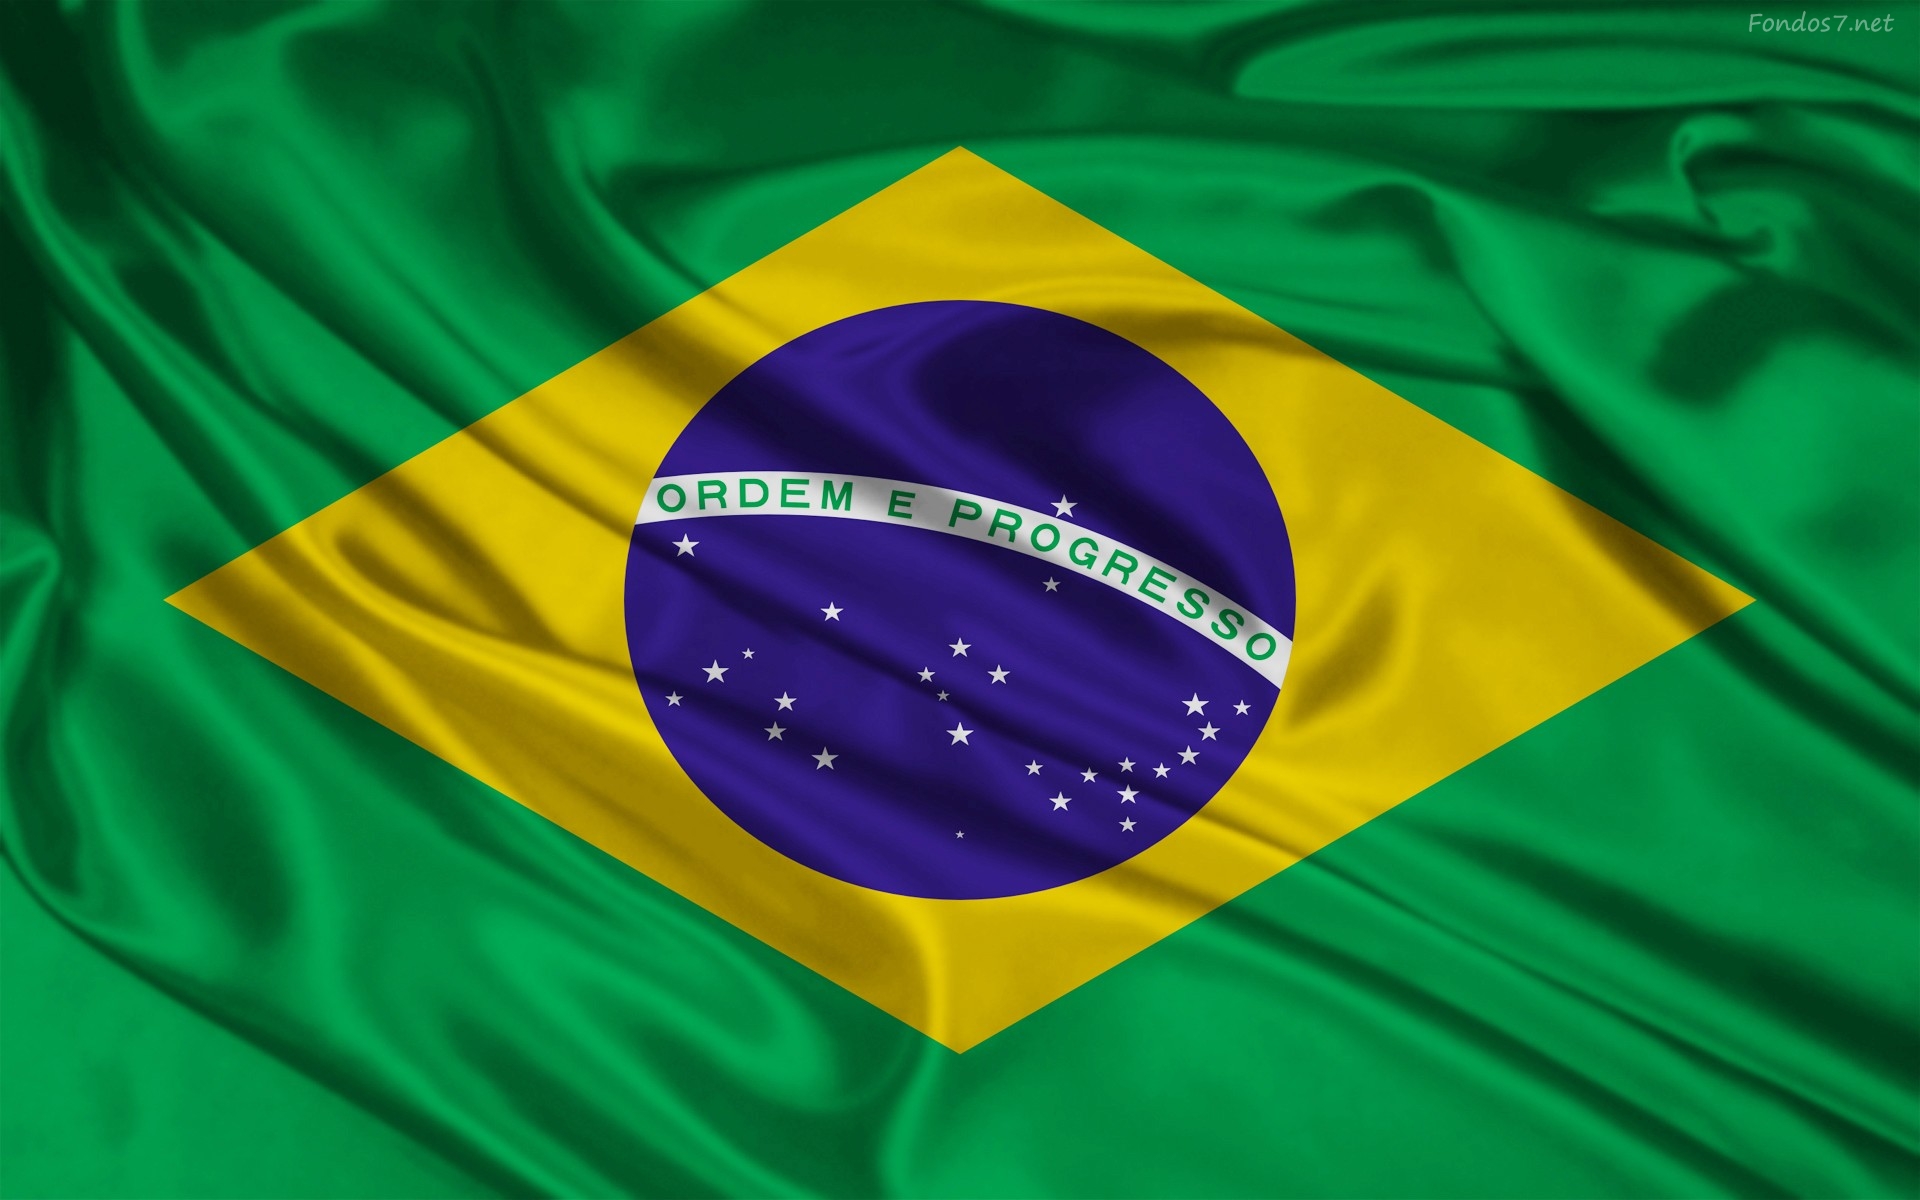 Un tribunal brasileño vuelve a suspender la licencia de explotación de la mina de Sossego de Vale